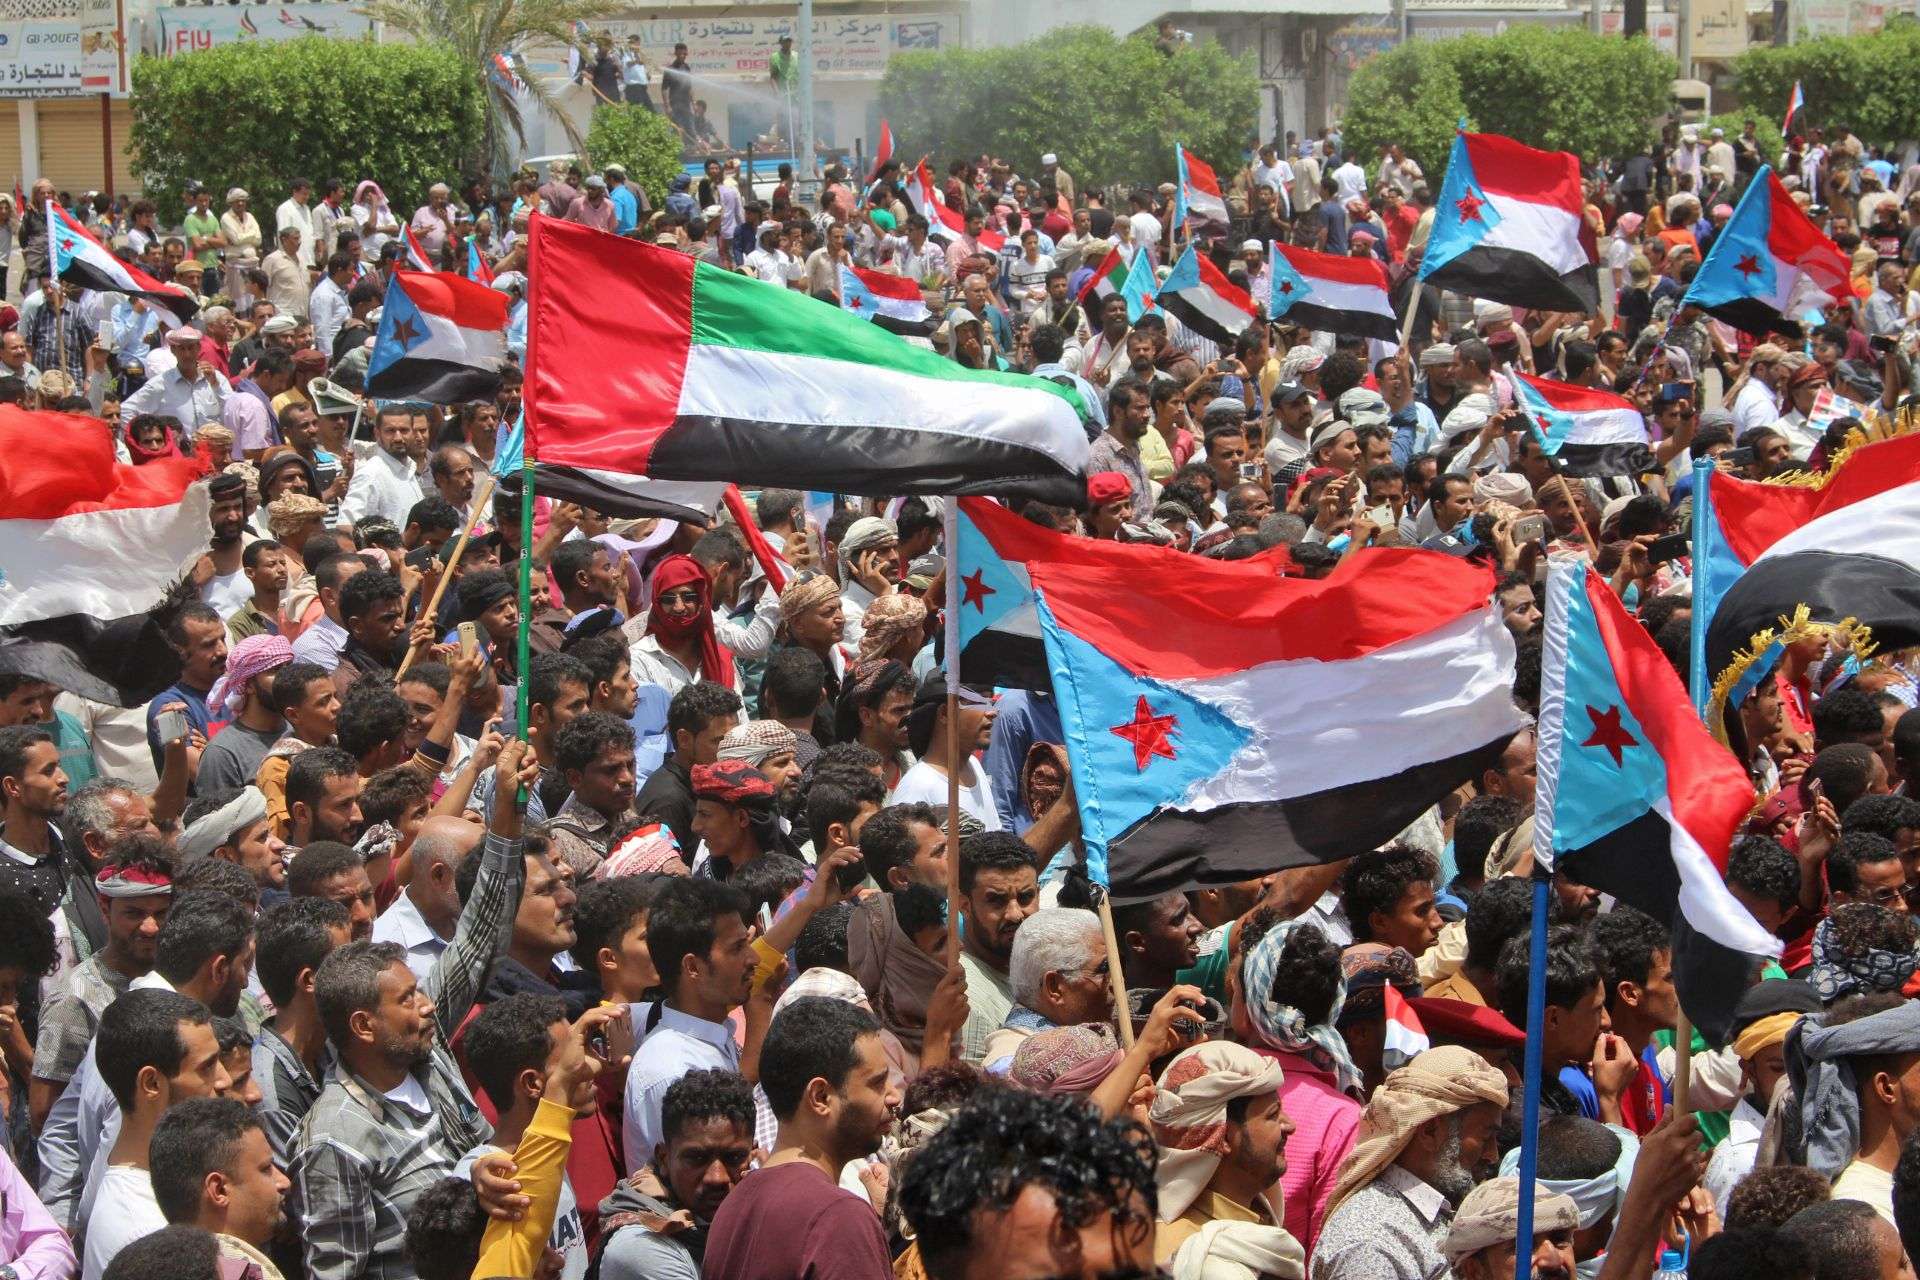 اليمنيون في الجنوب يرفعون اعلام الامارات والسعودية لدورهما في حفظ الاستقرار 